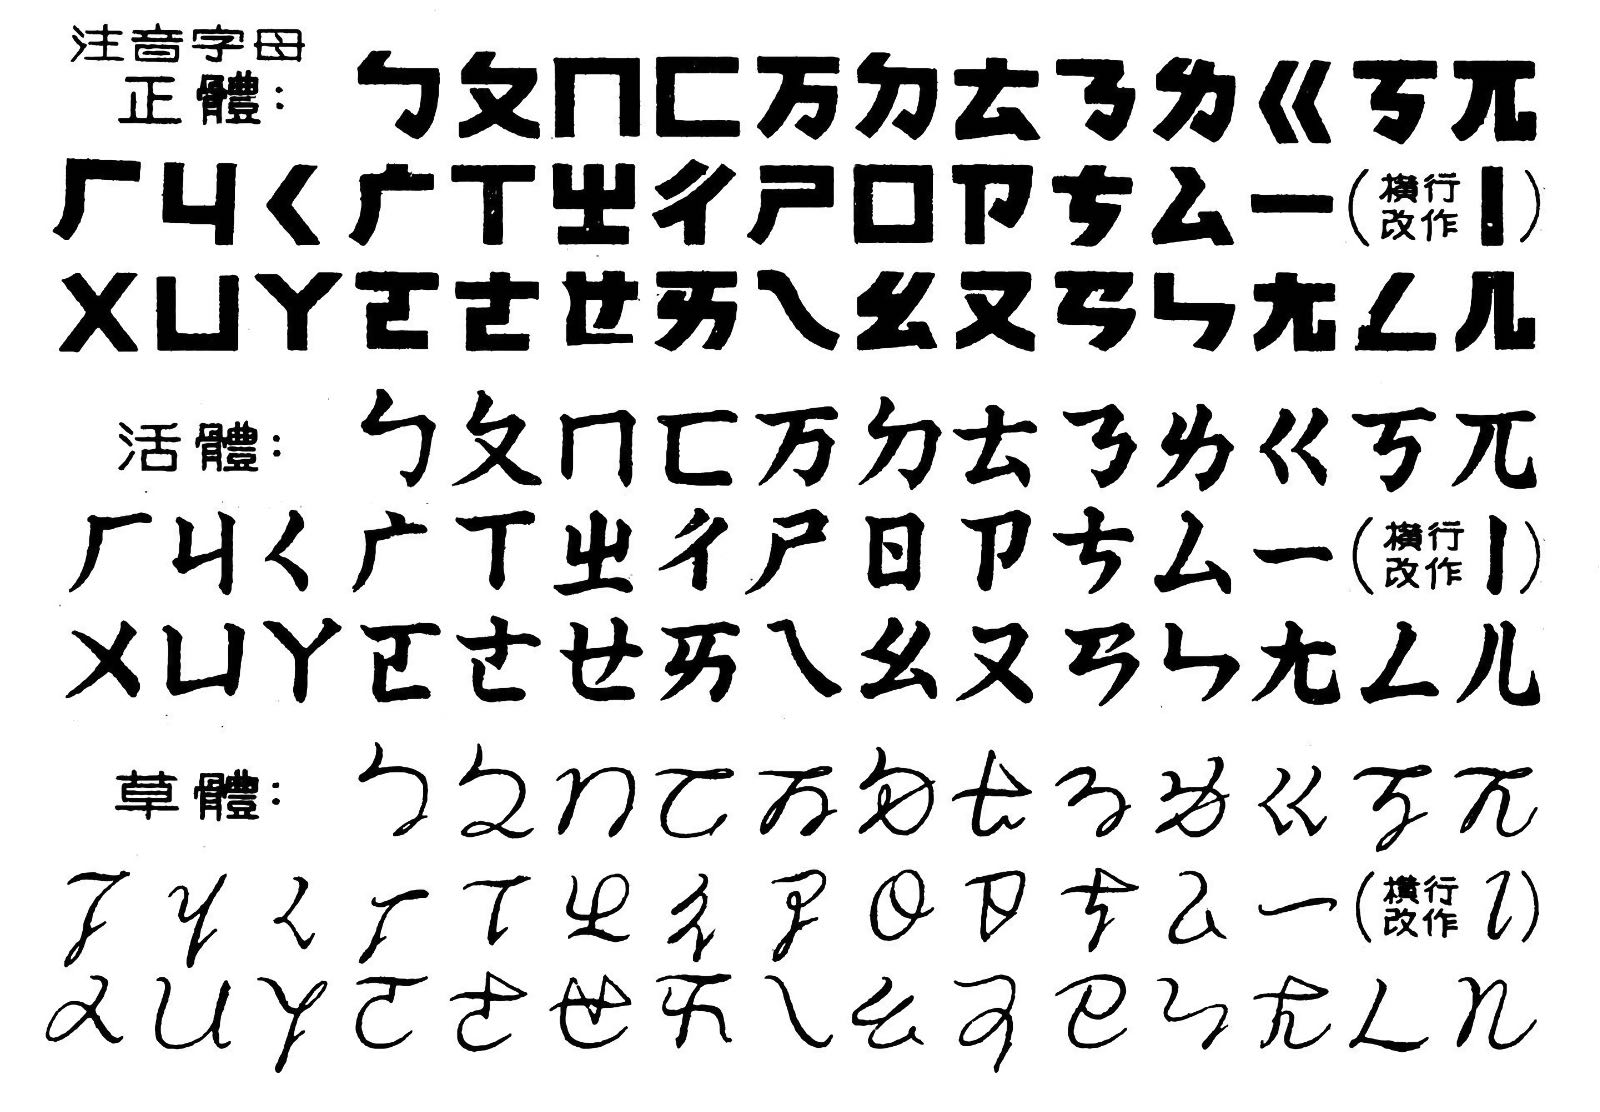 Bopomofo in Regular, Handwritten Regular, & Cursive formats